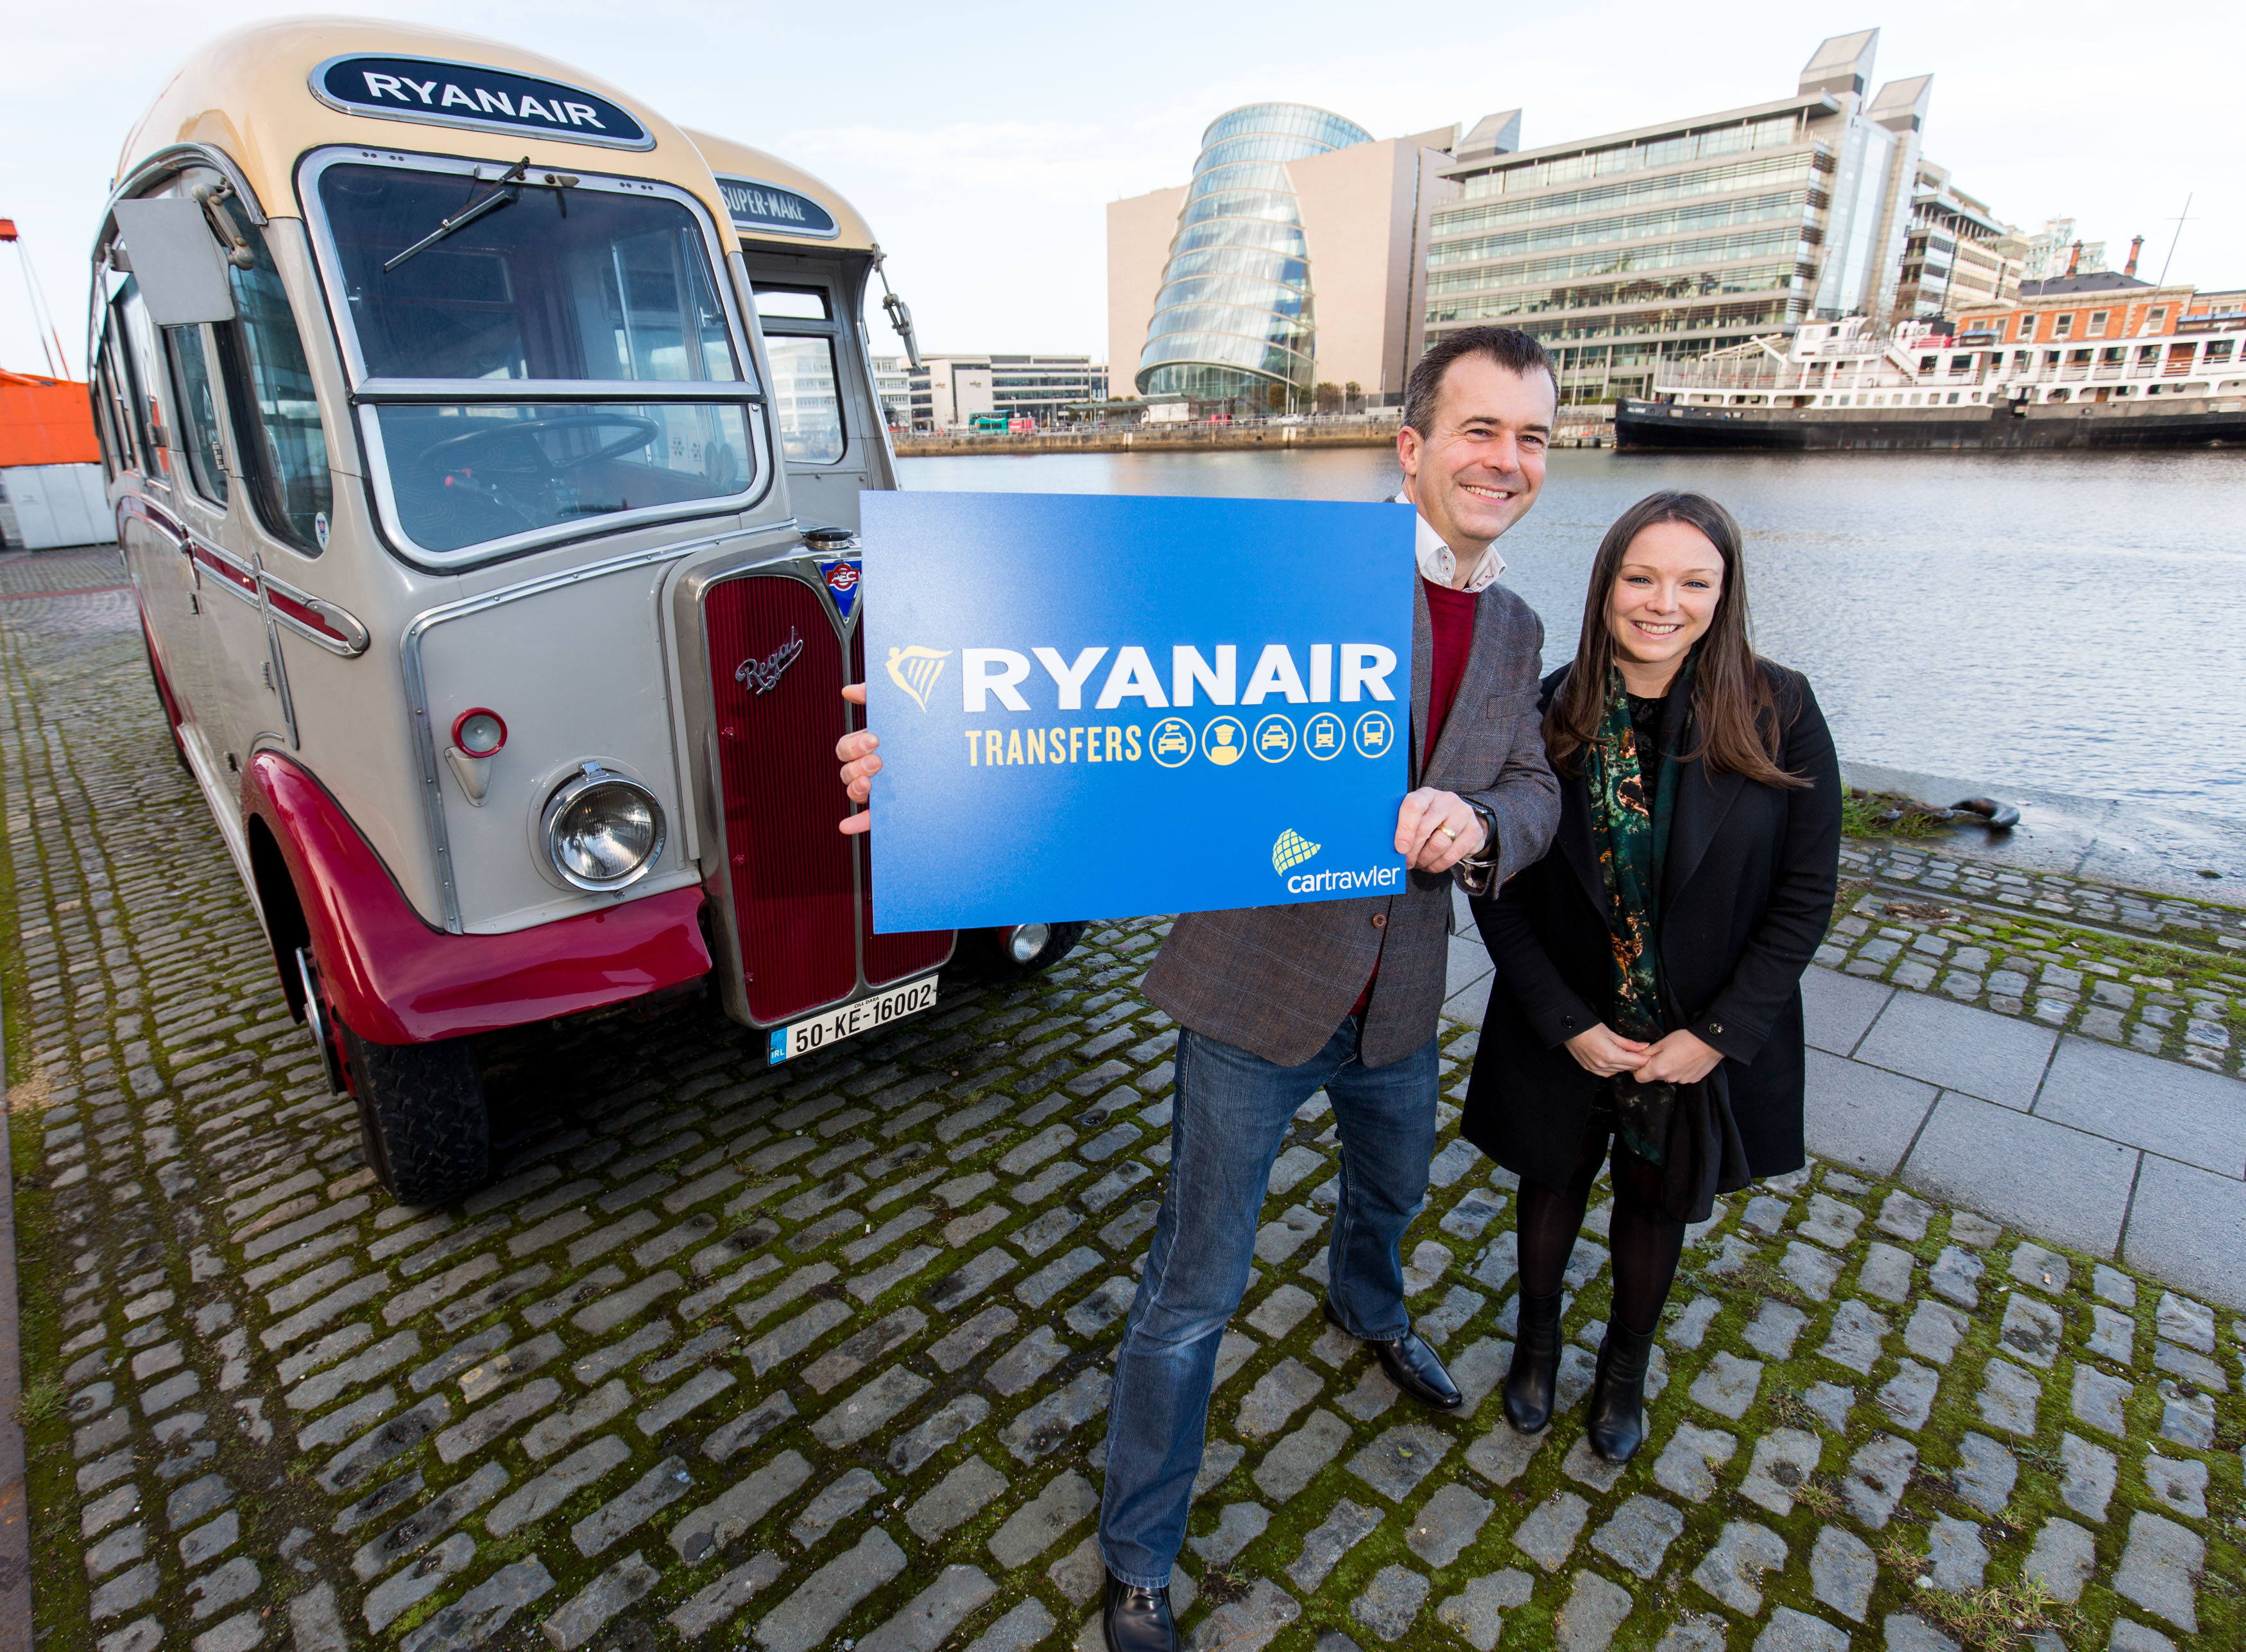 Ryanair Wprowadza Nową Usługę Transferów We Współpracy Z Cartrawler